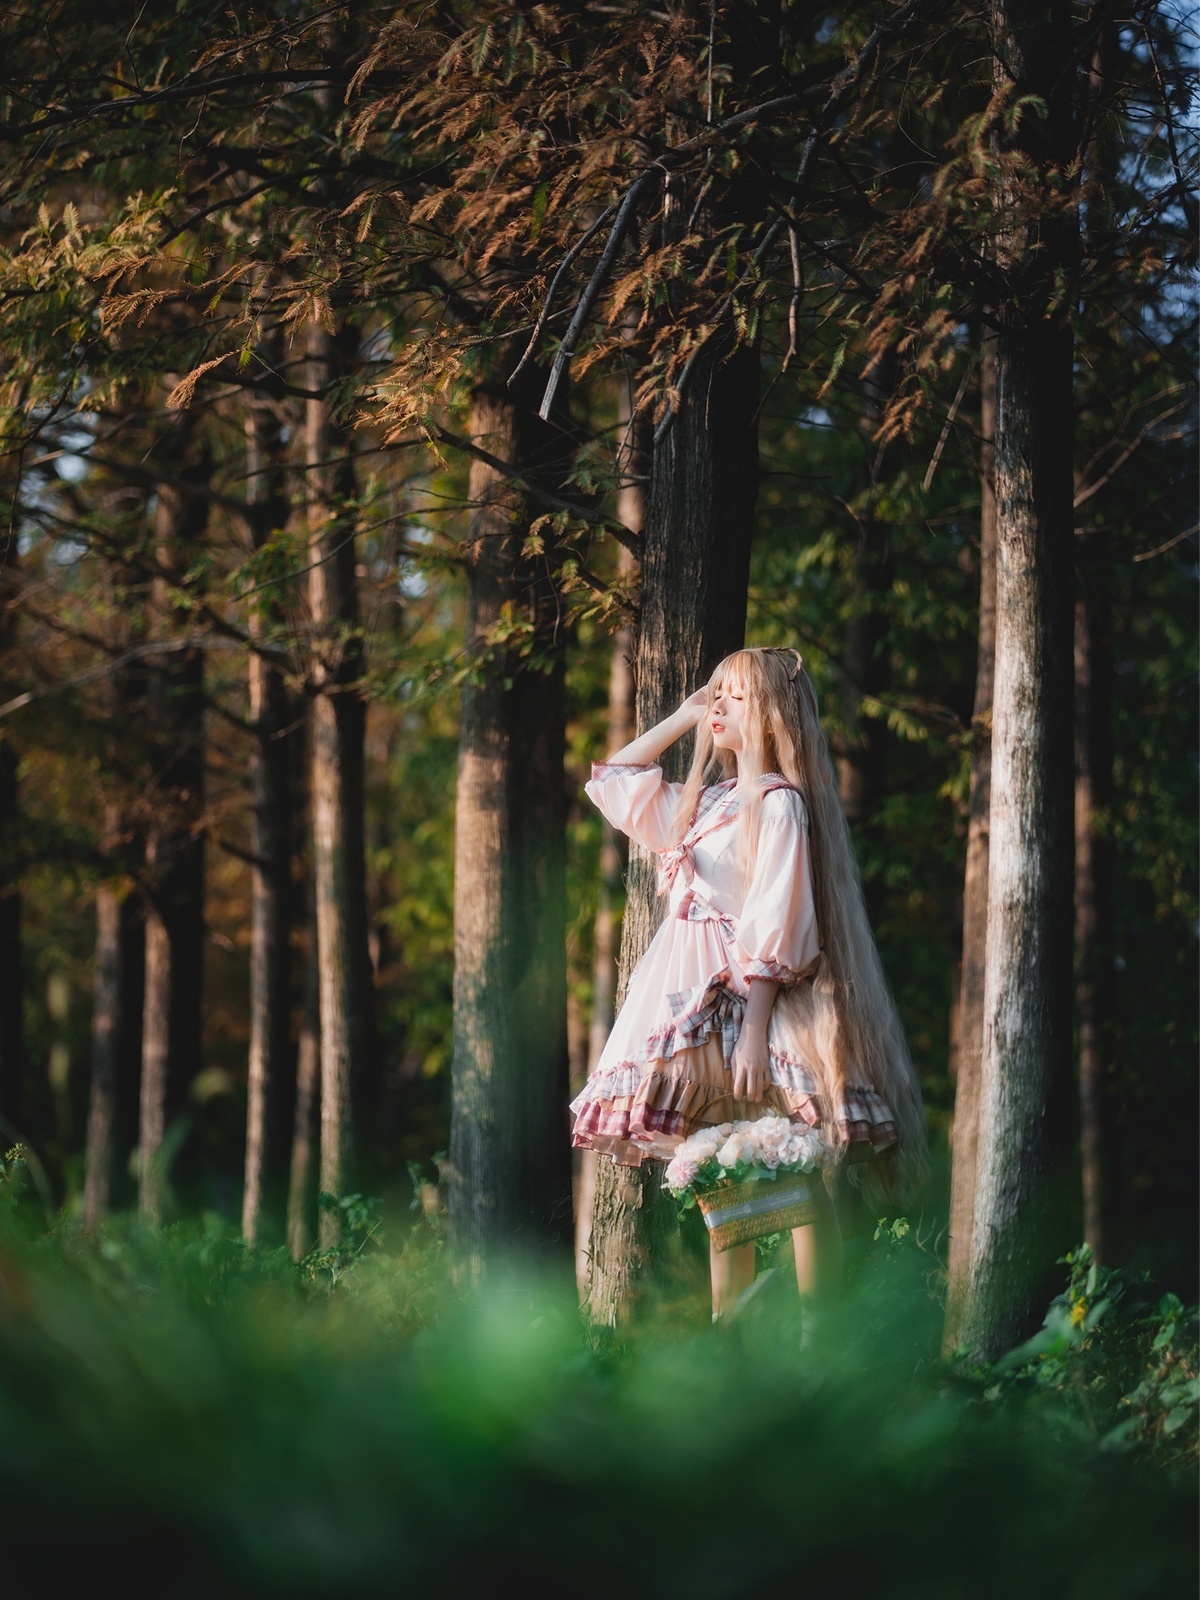 一个小女孩穿着白色裙子穿过一棵棵树的森林